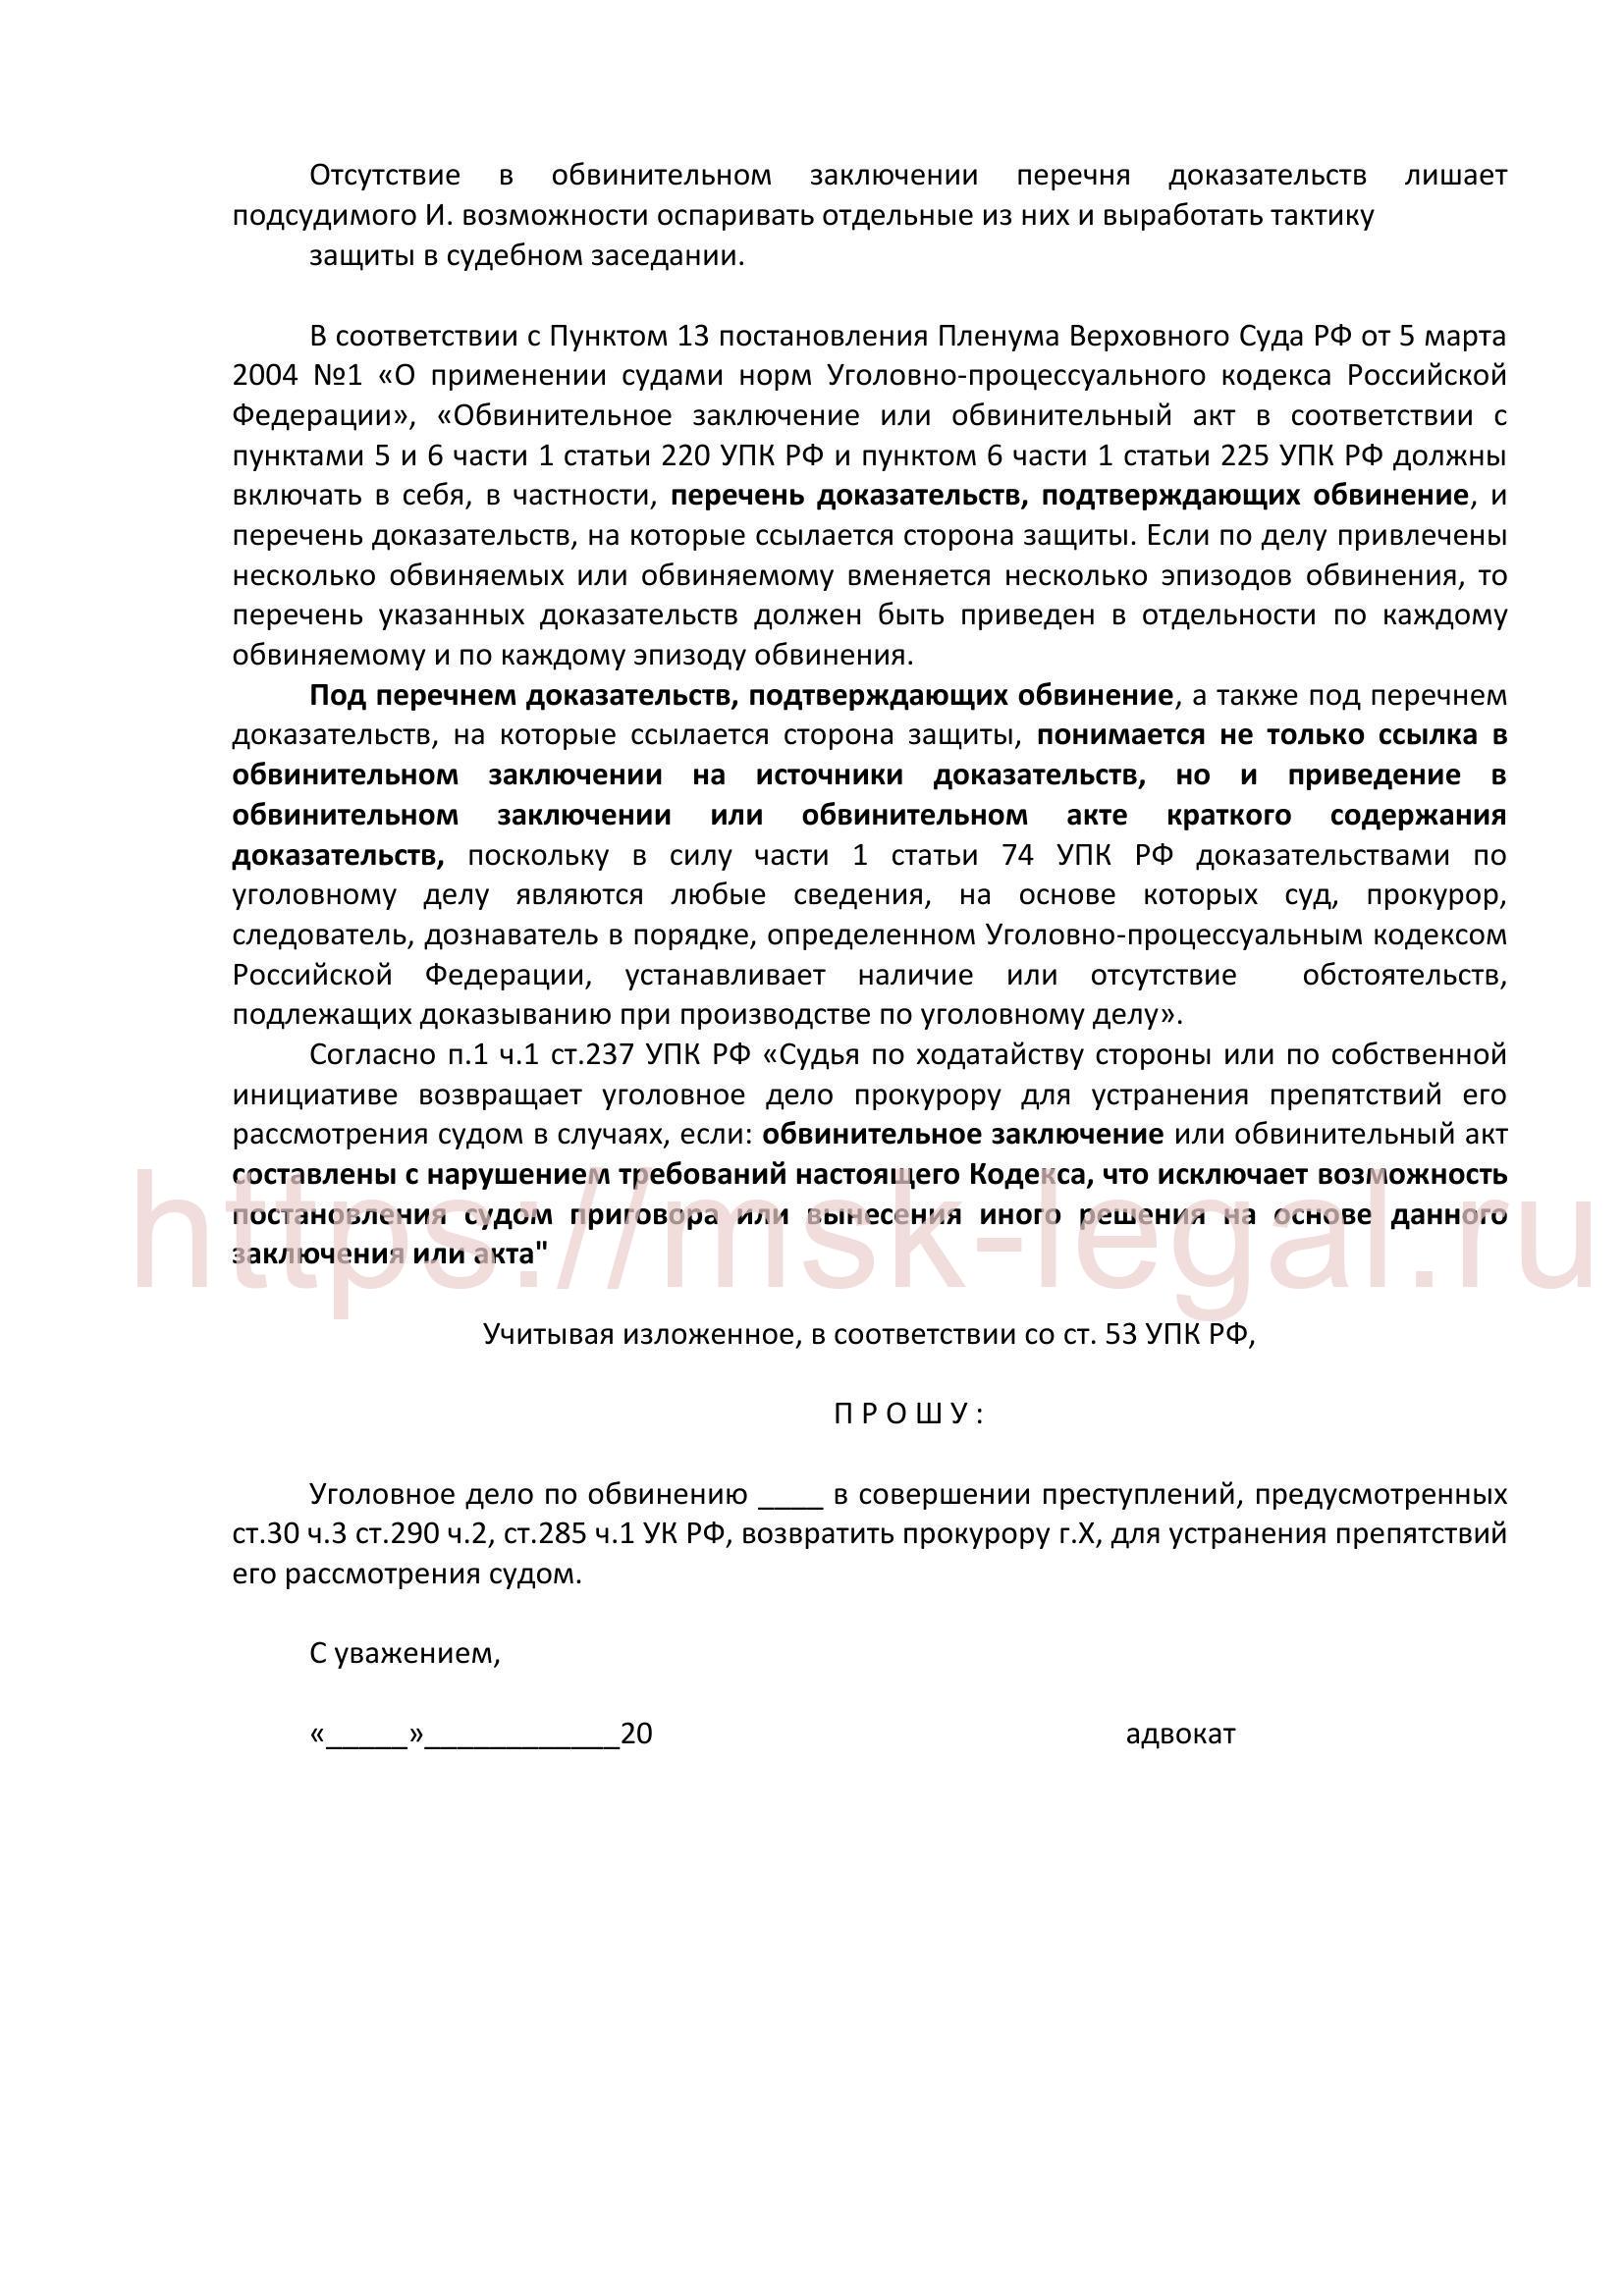 Ходатайство о возвращении дела прокурору в порядке ст. 237 УПК РФ